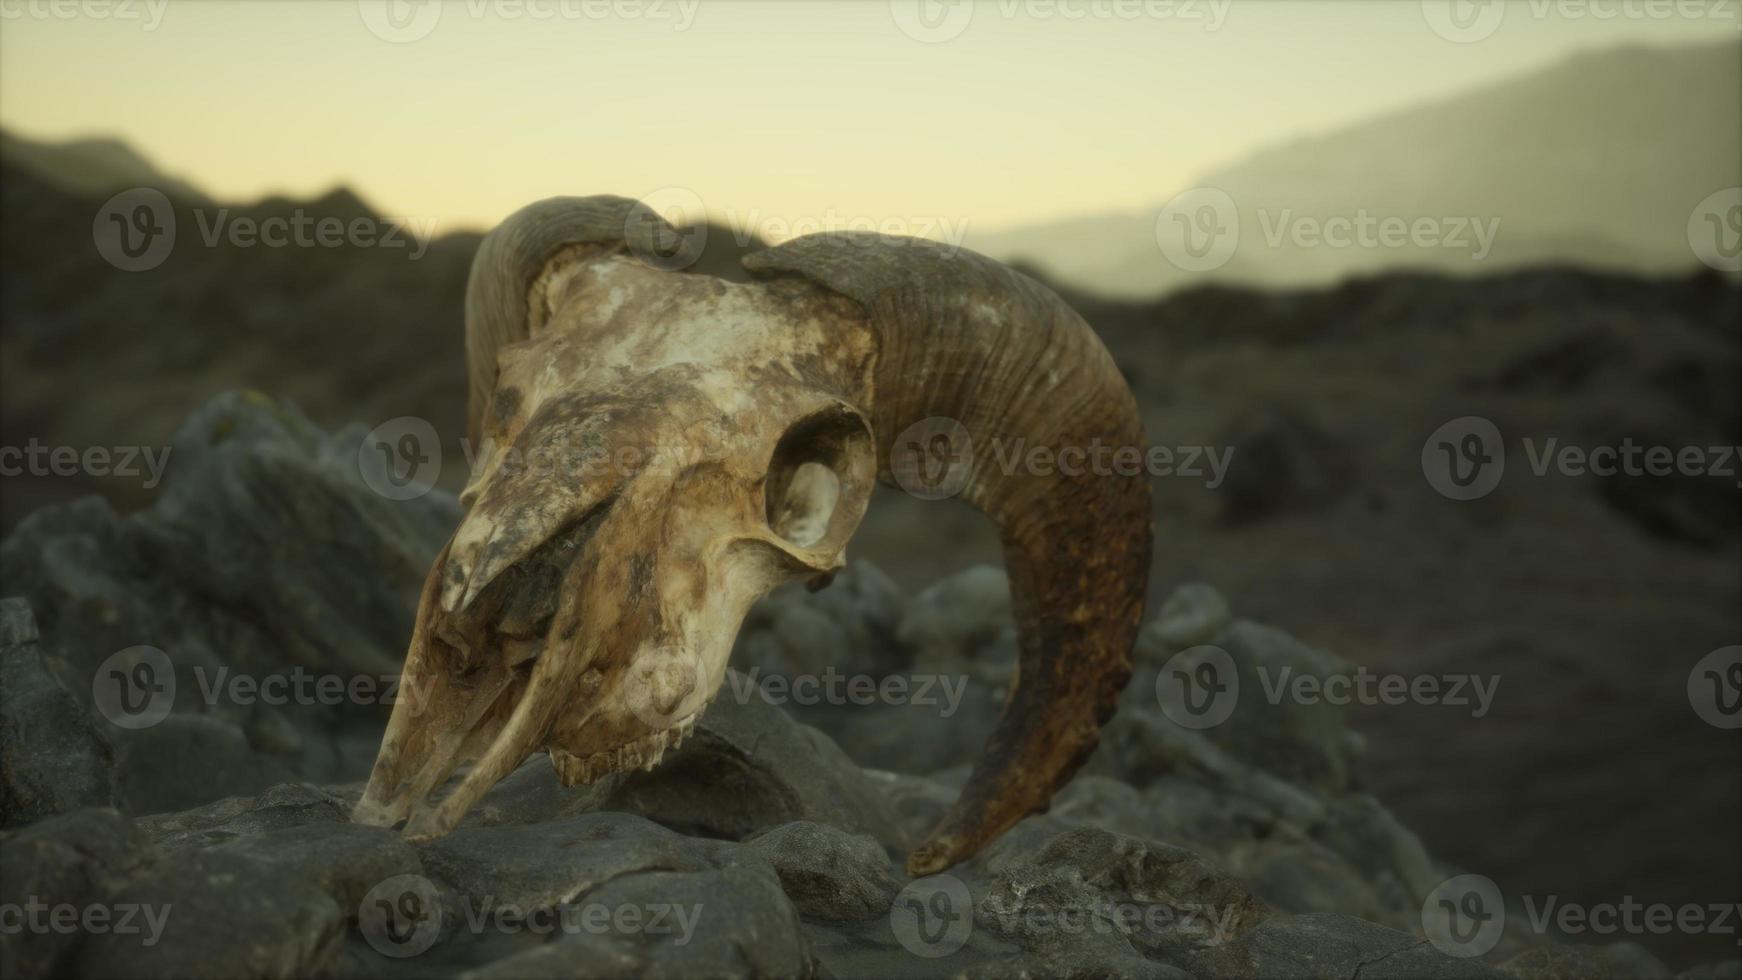 Europese moeflon ram schedel in natuurlijke omstandigheden in rotsachtige bergen foto